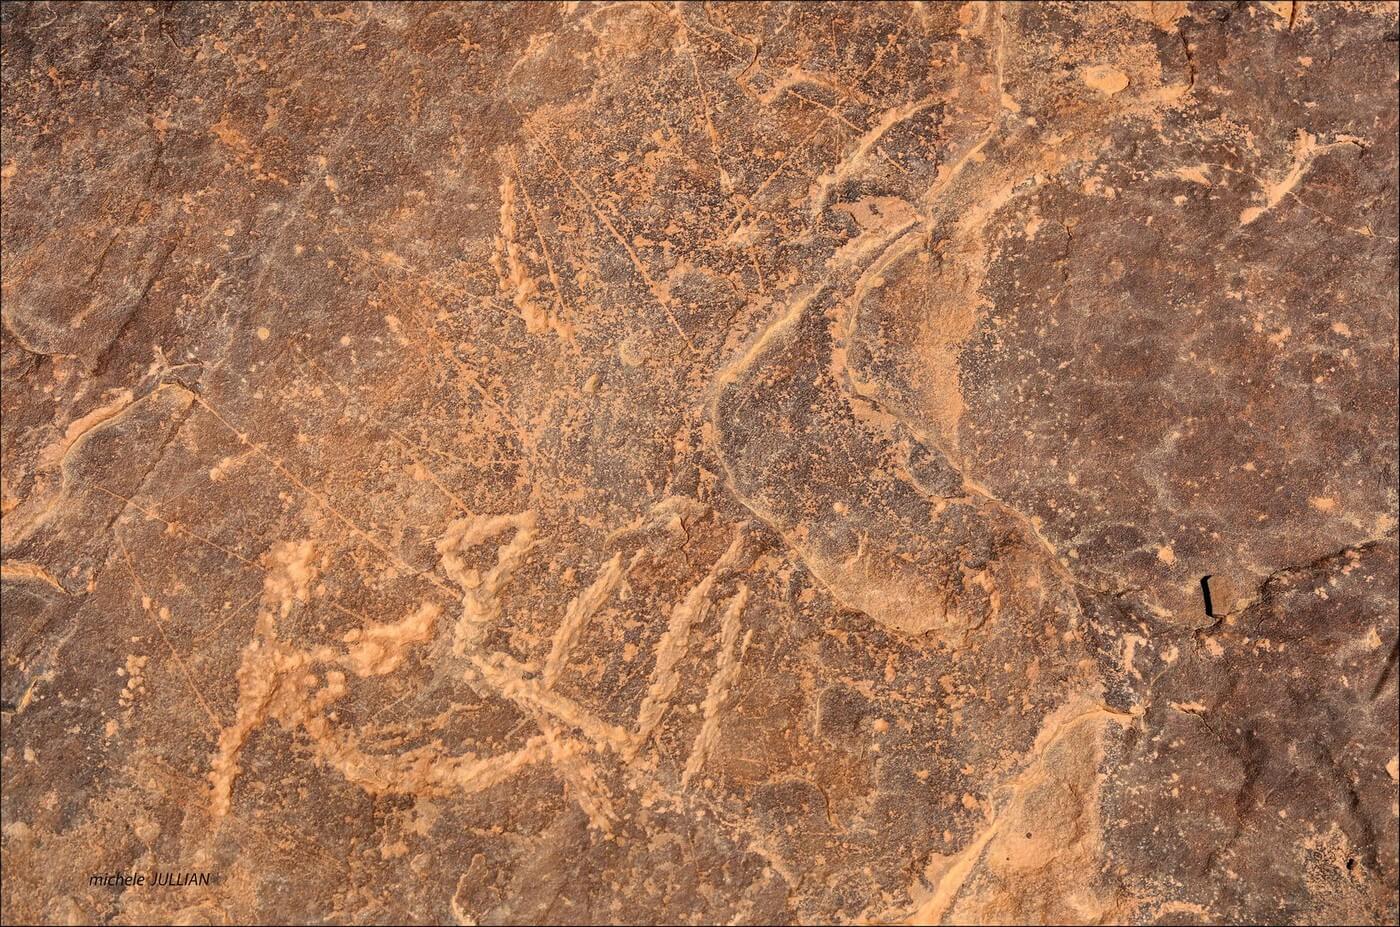  gravures pariétales datant de plus de 10 000 ans au sahara